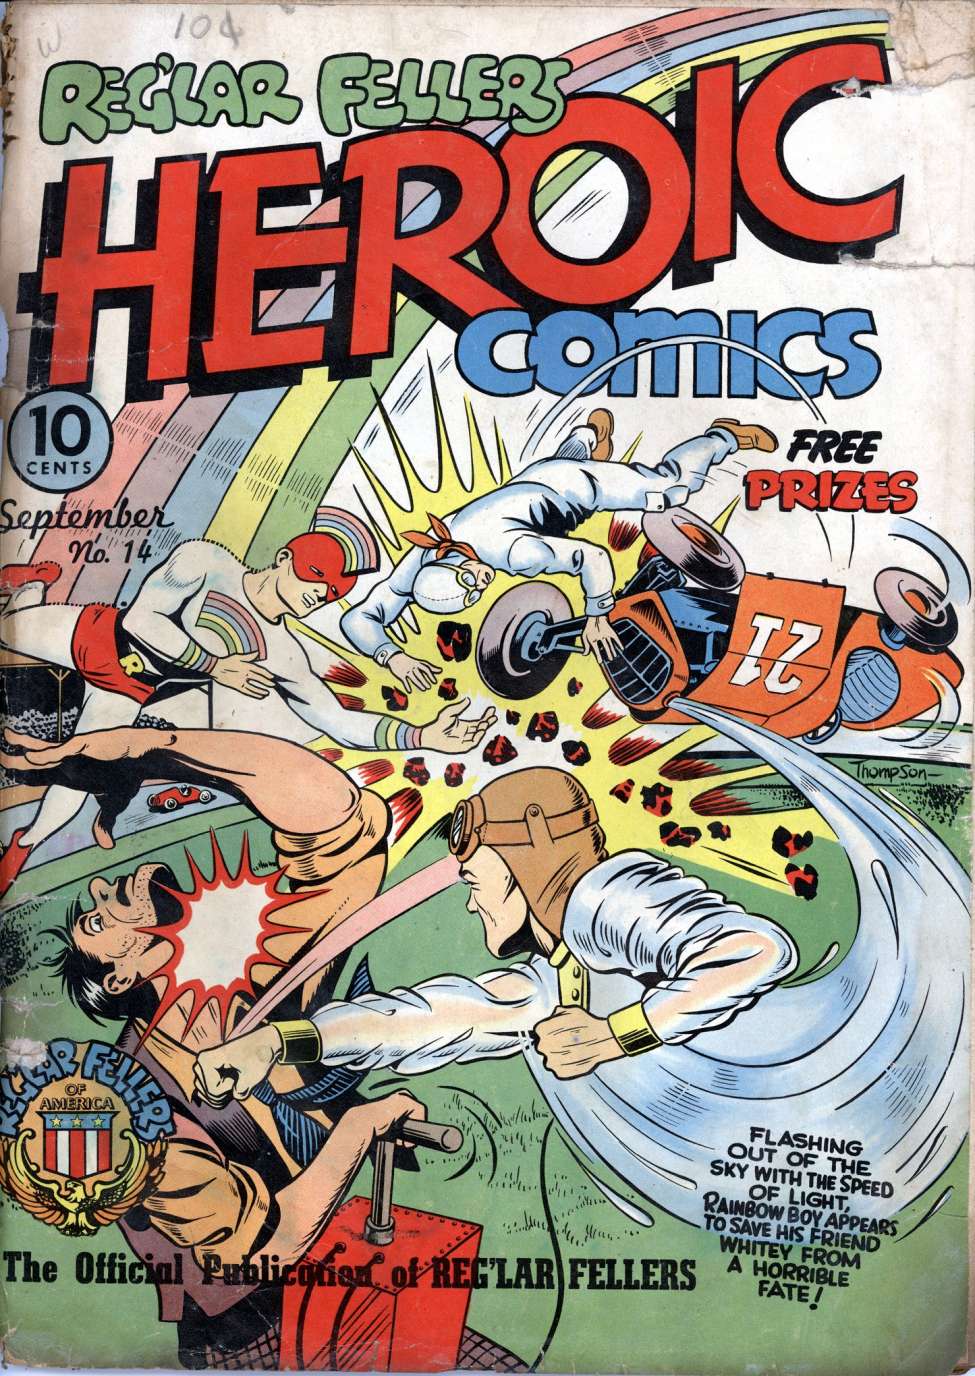 Book Cover For Reg'lar Fellers Heroic Comics 14